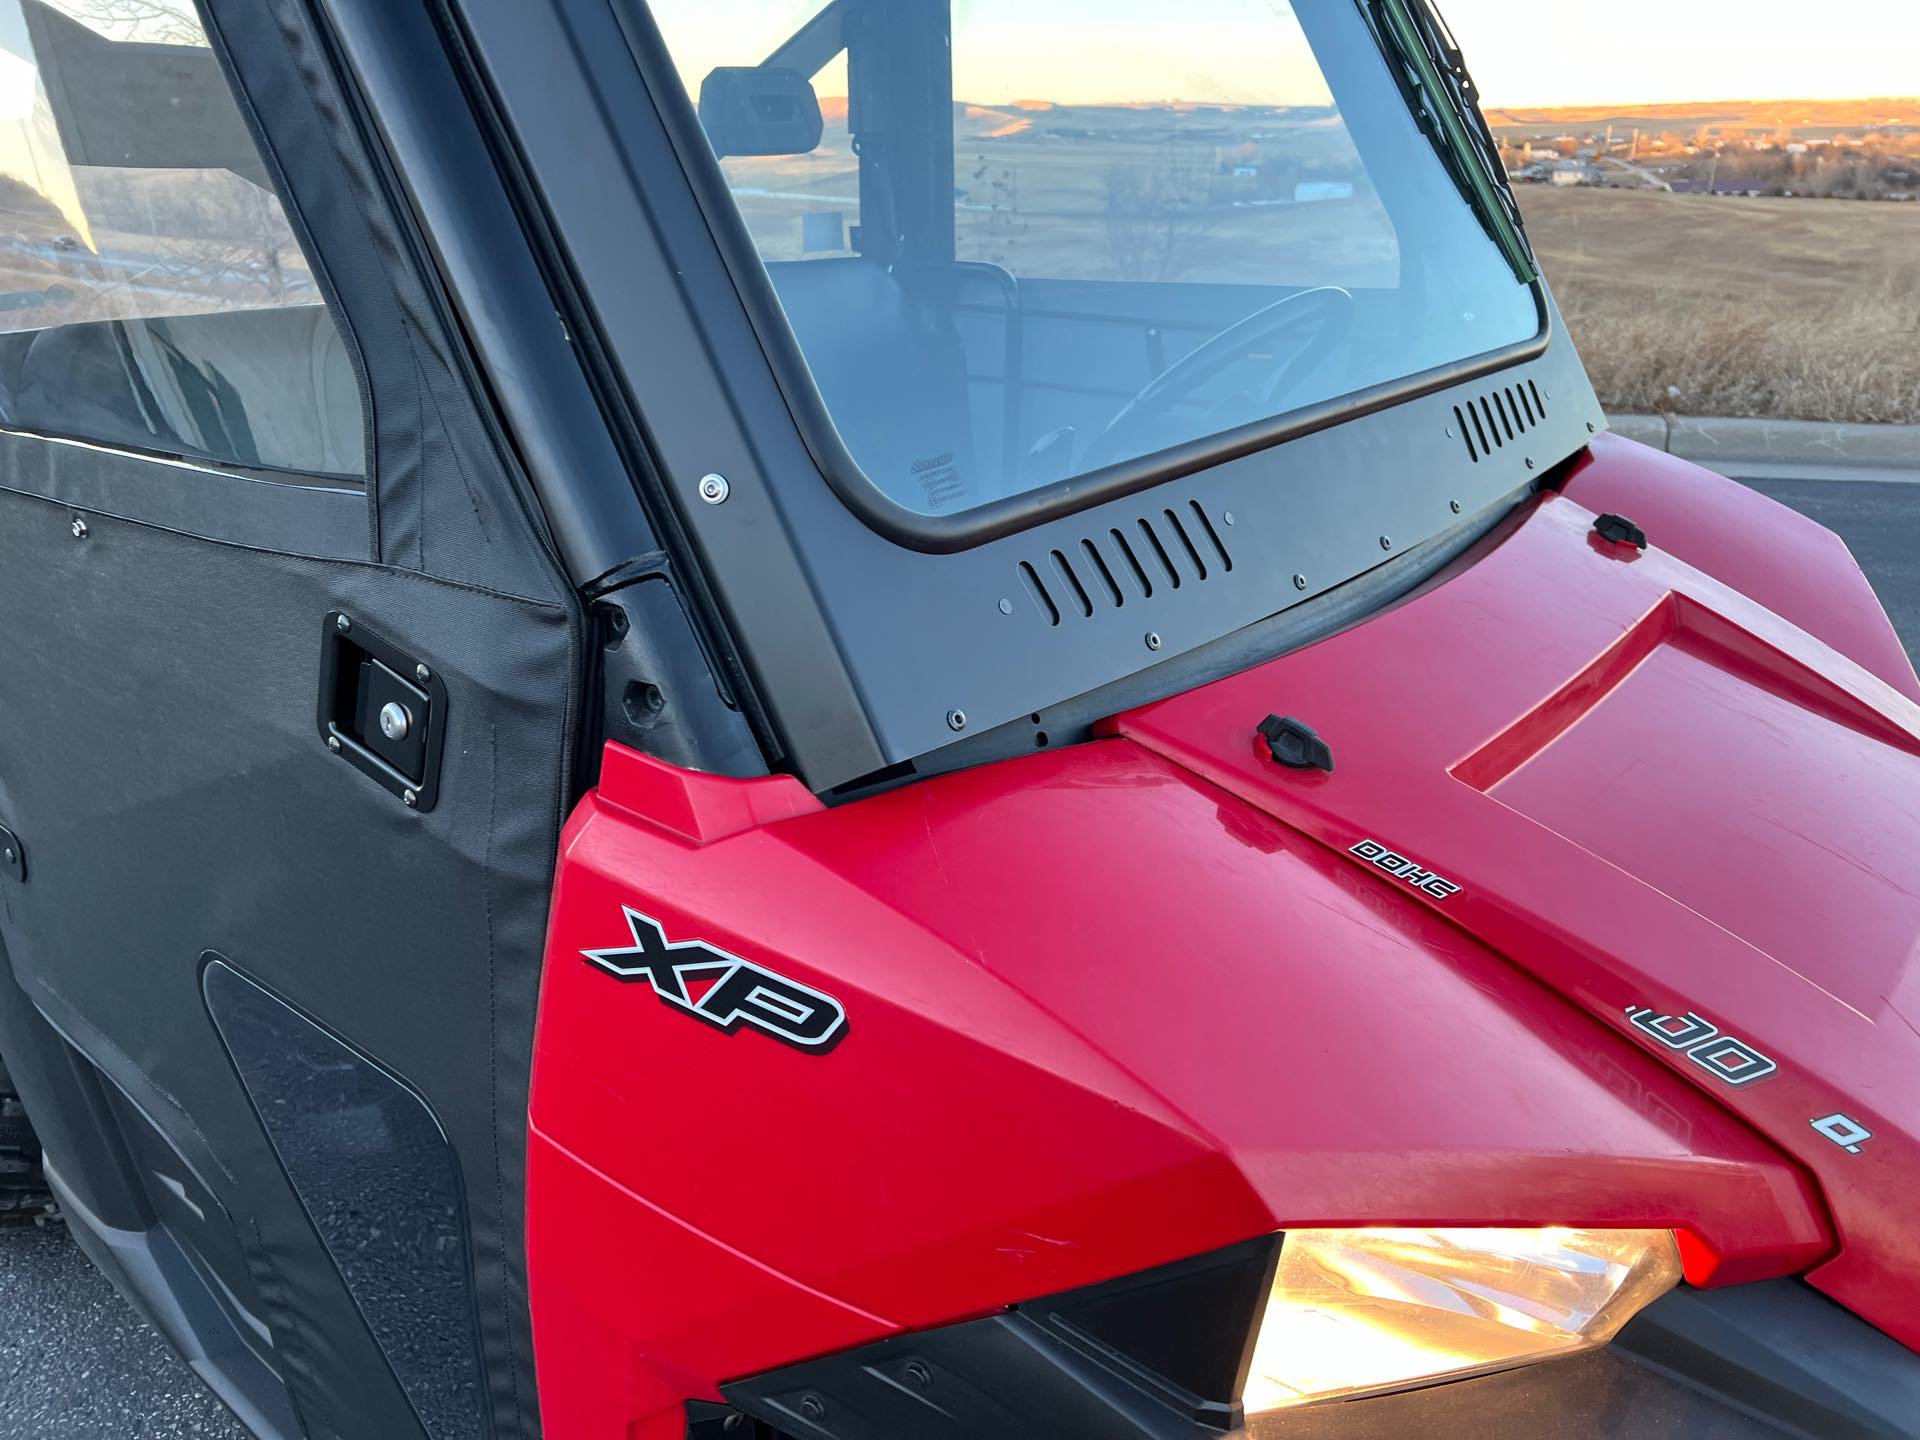 2019 Polaris Ranger XP 900 EPS at Mount Rushmore Motorsports